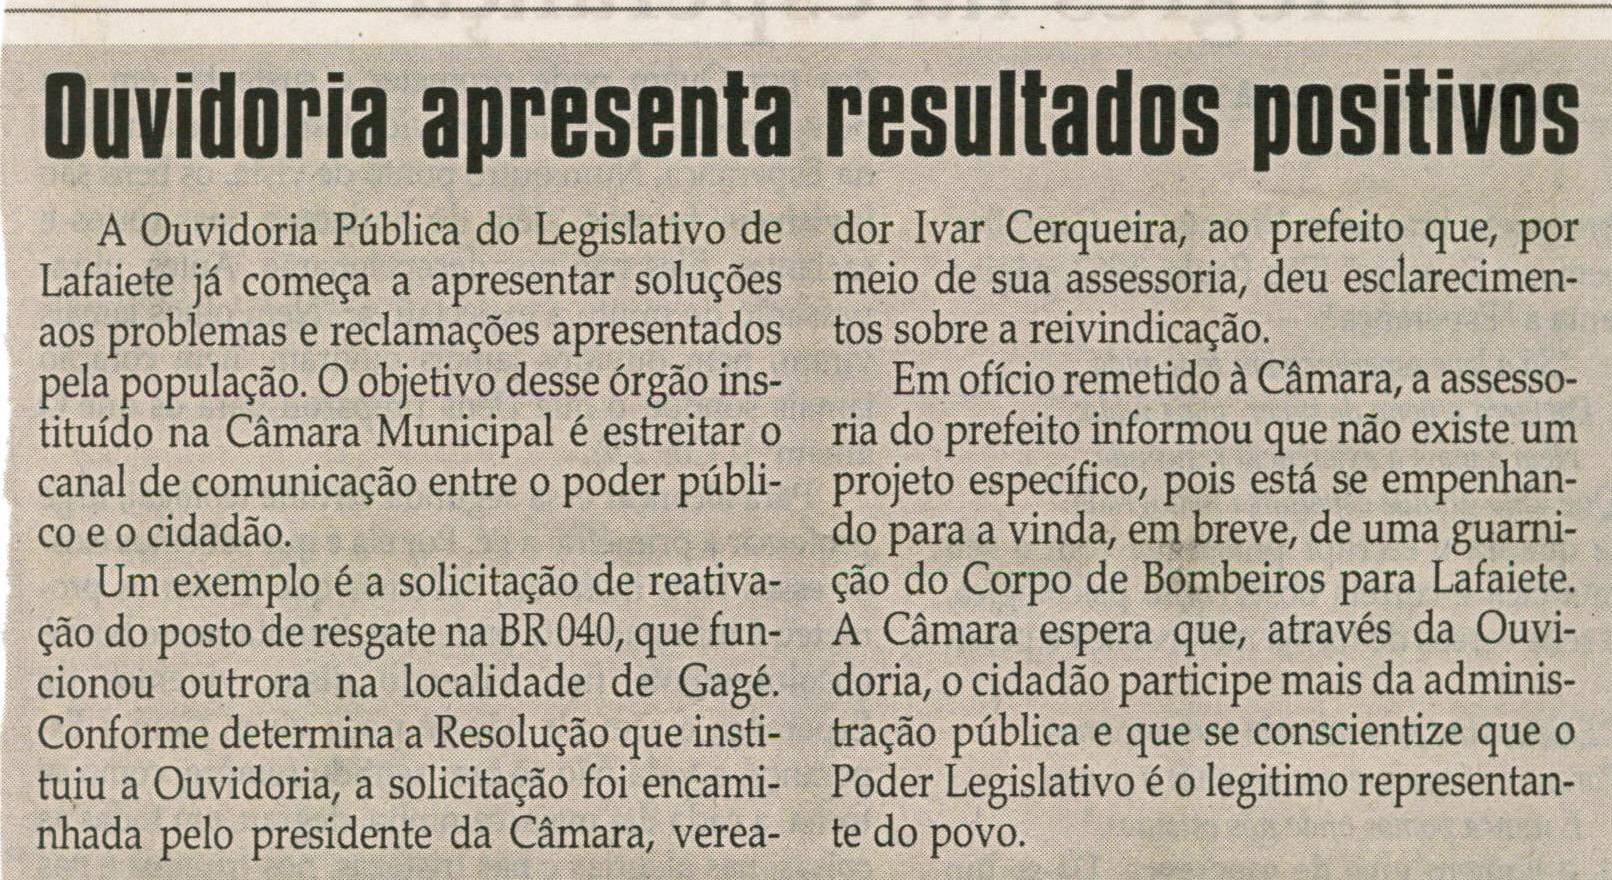 Ouvidoria apresenta resultados positivos. Jornal Correio da Cidade, Conselheiro Lafaiete, 28 fev. 2009, p. 05.